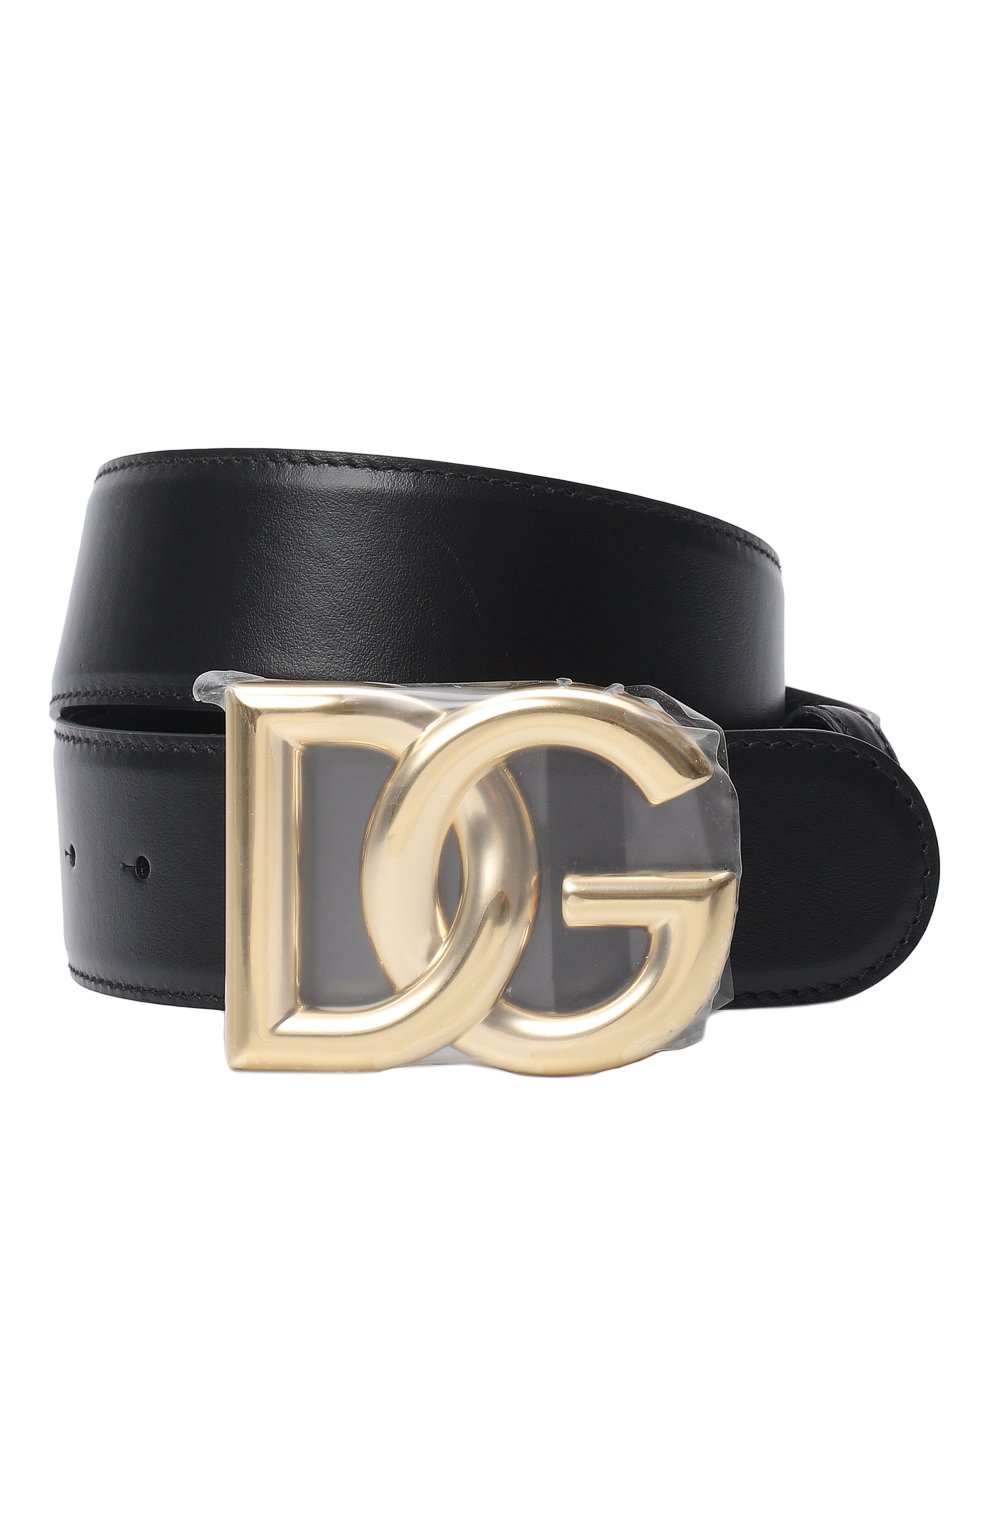 Кожаный ремень | Dolce & Gabbana | Чёрный - 1